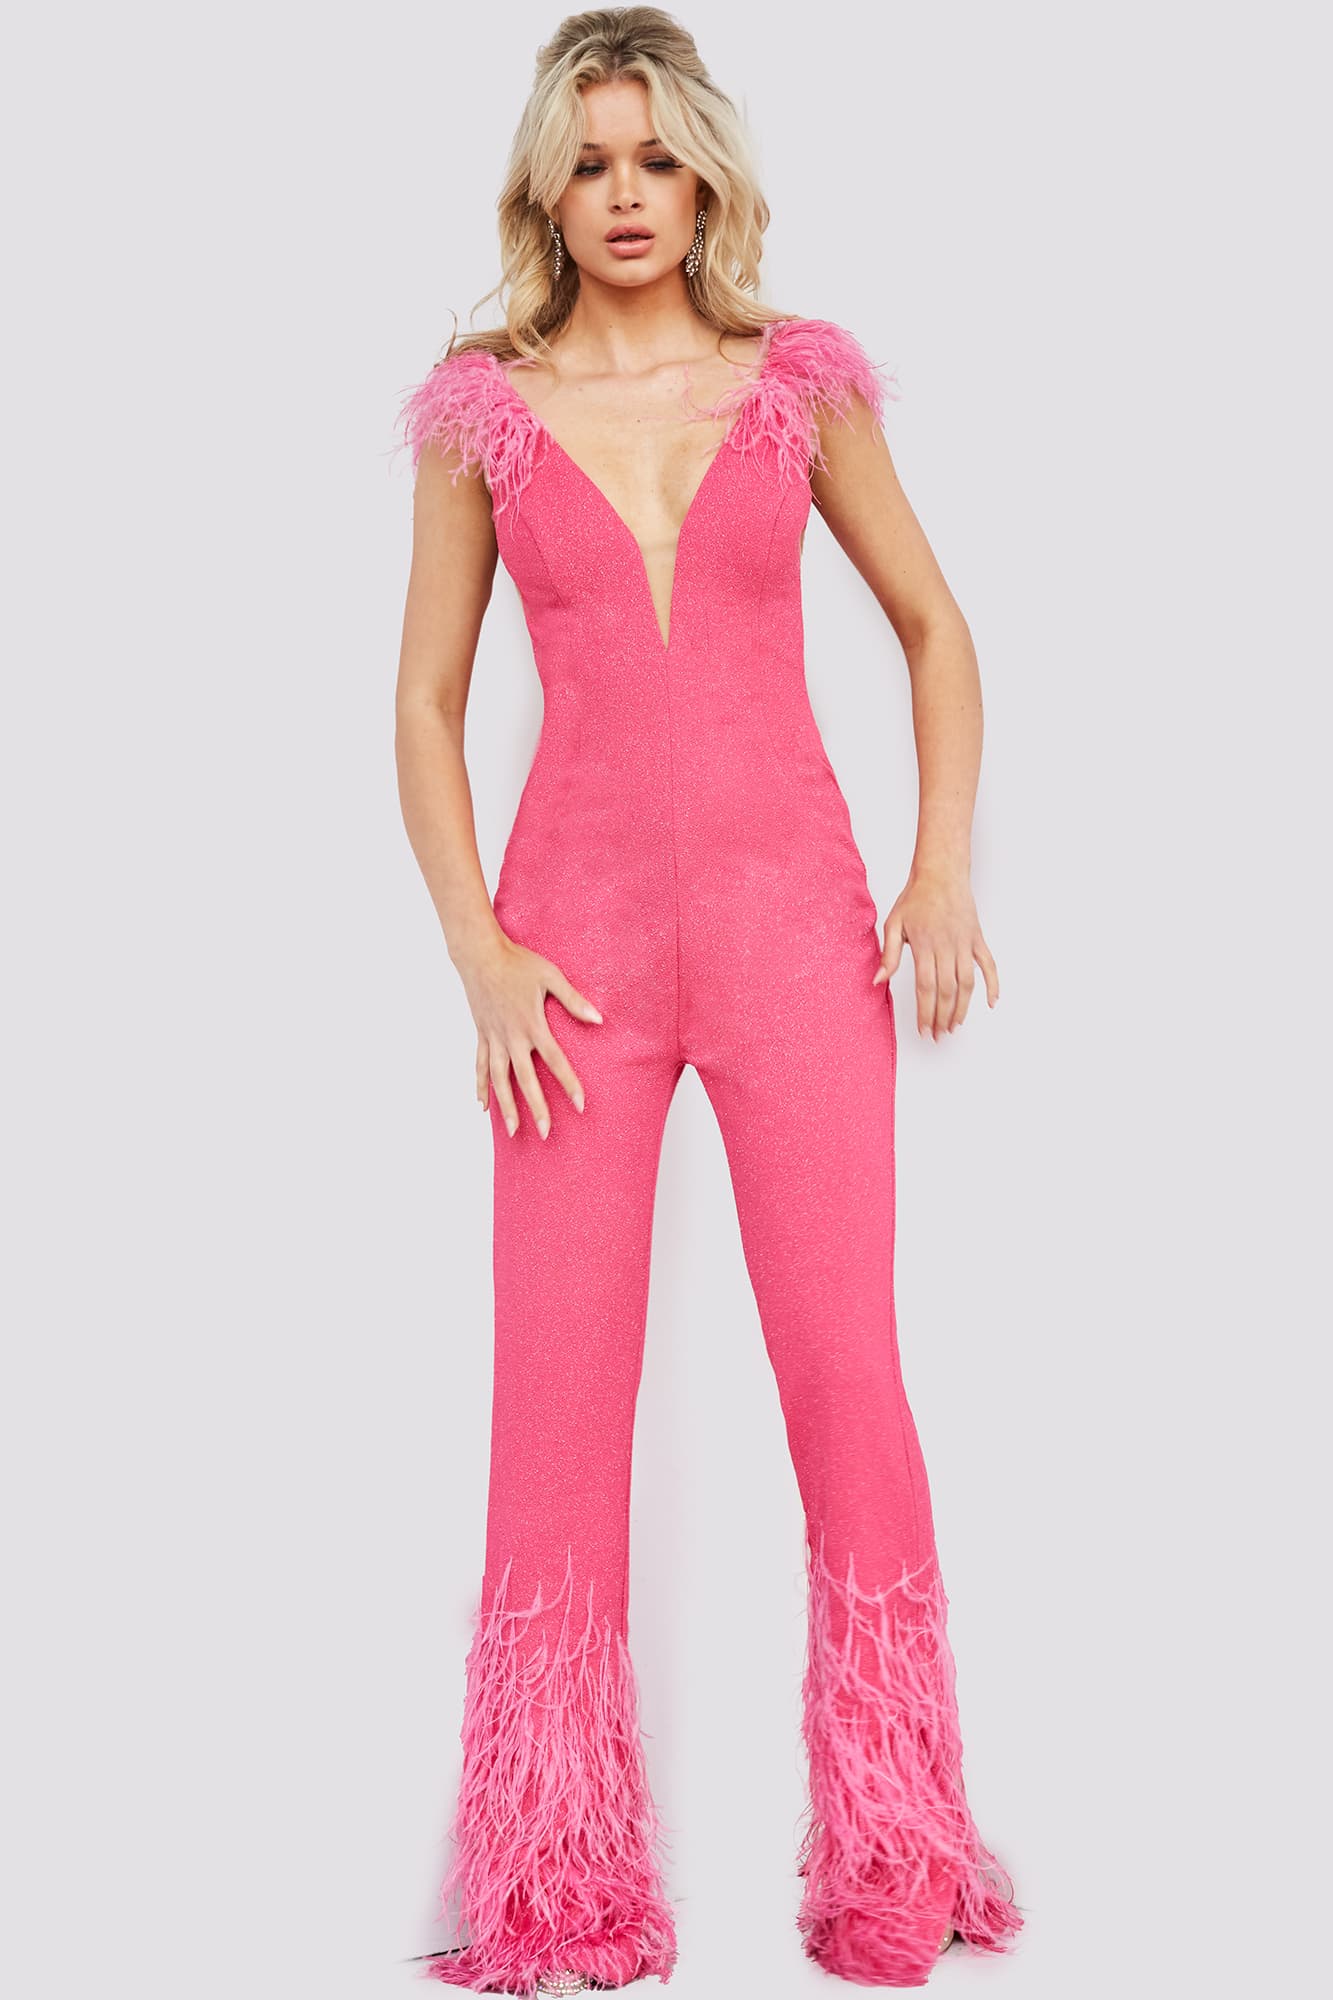 Jovani 08554 Size 6 Hot Pink Shimmer Jumpsuit Feather Pant Legs Slit V ...